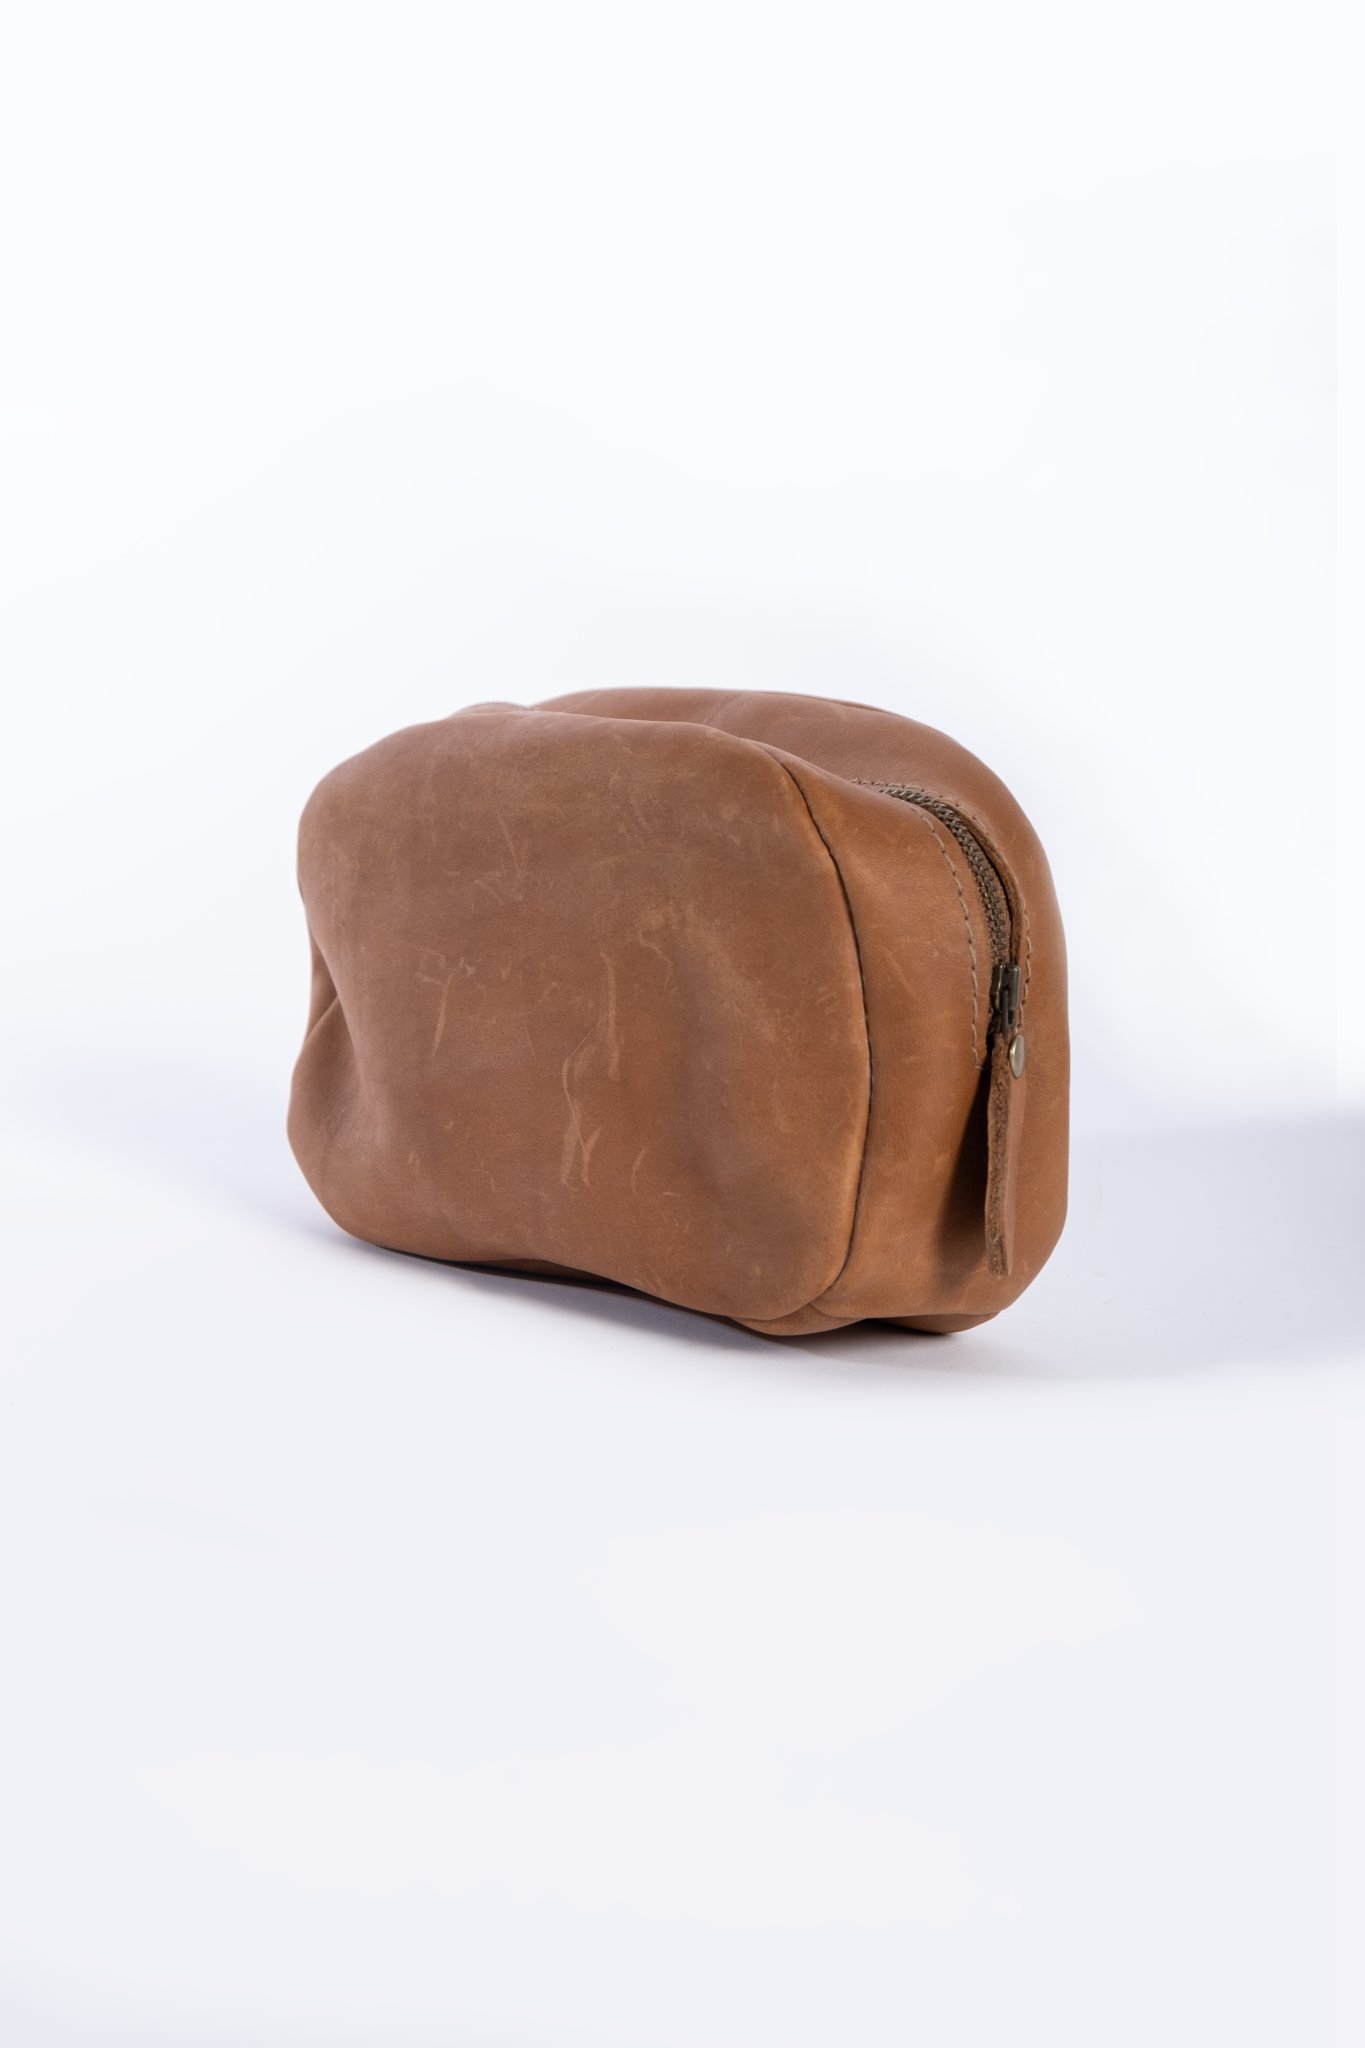 Full grain Leather Make-up Bag